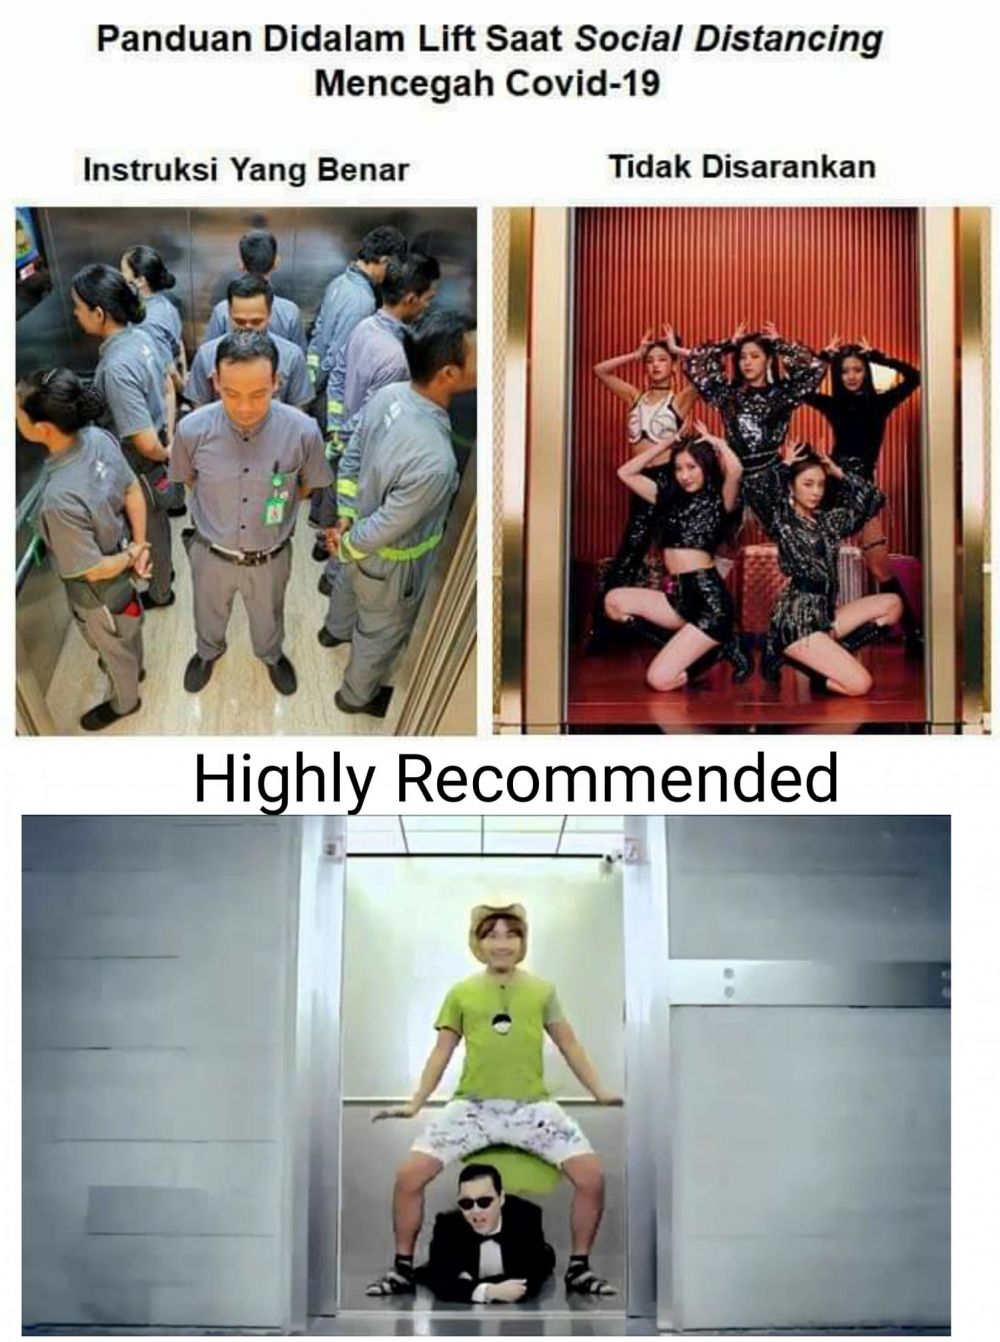 5 Meme panduan penggunaan lift saat social distancing, nyeleneh